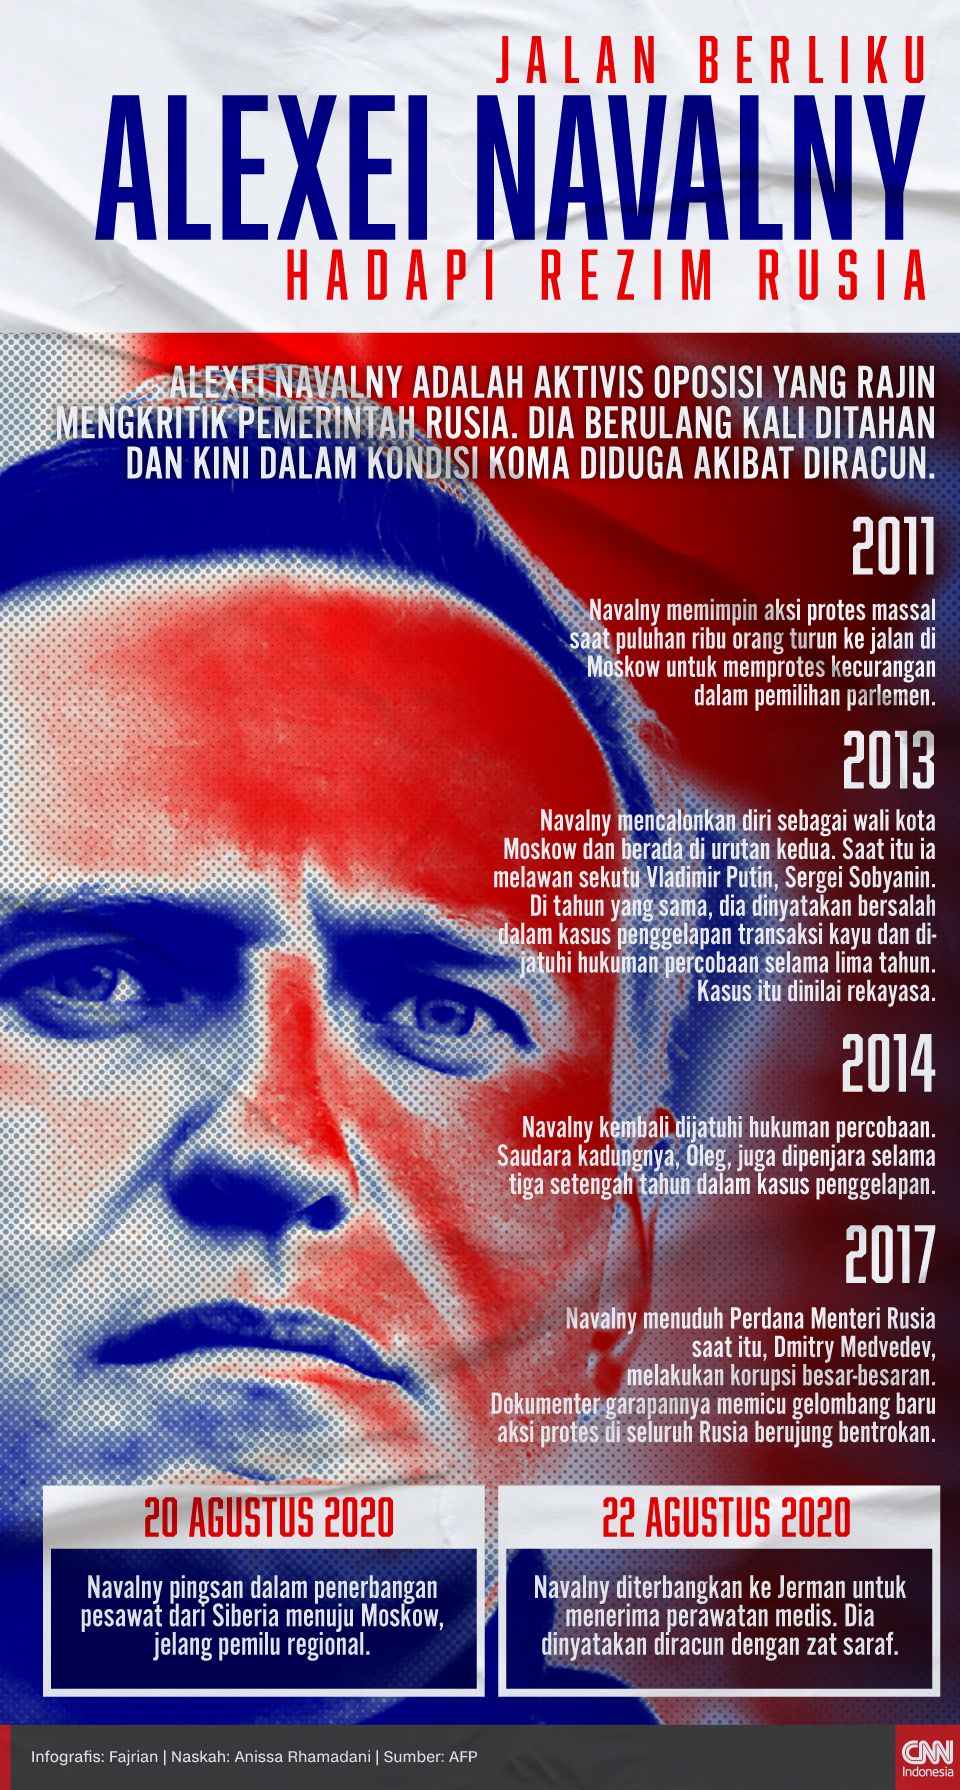 Infografis Jalan Berliku Alexei Navalny Hadapi Rezim Rusia